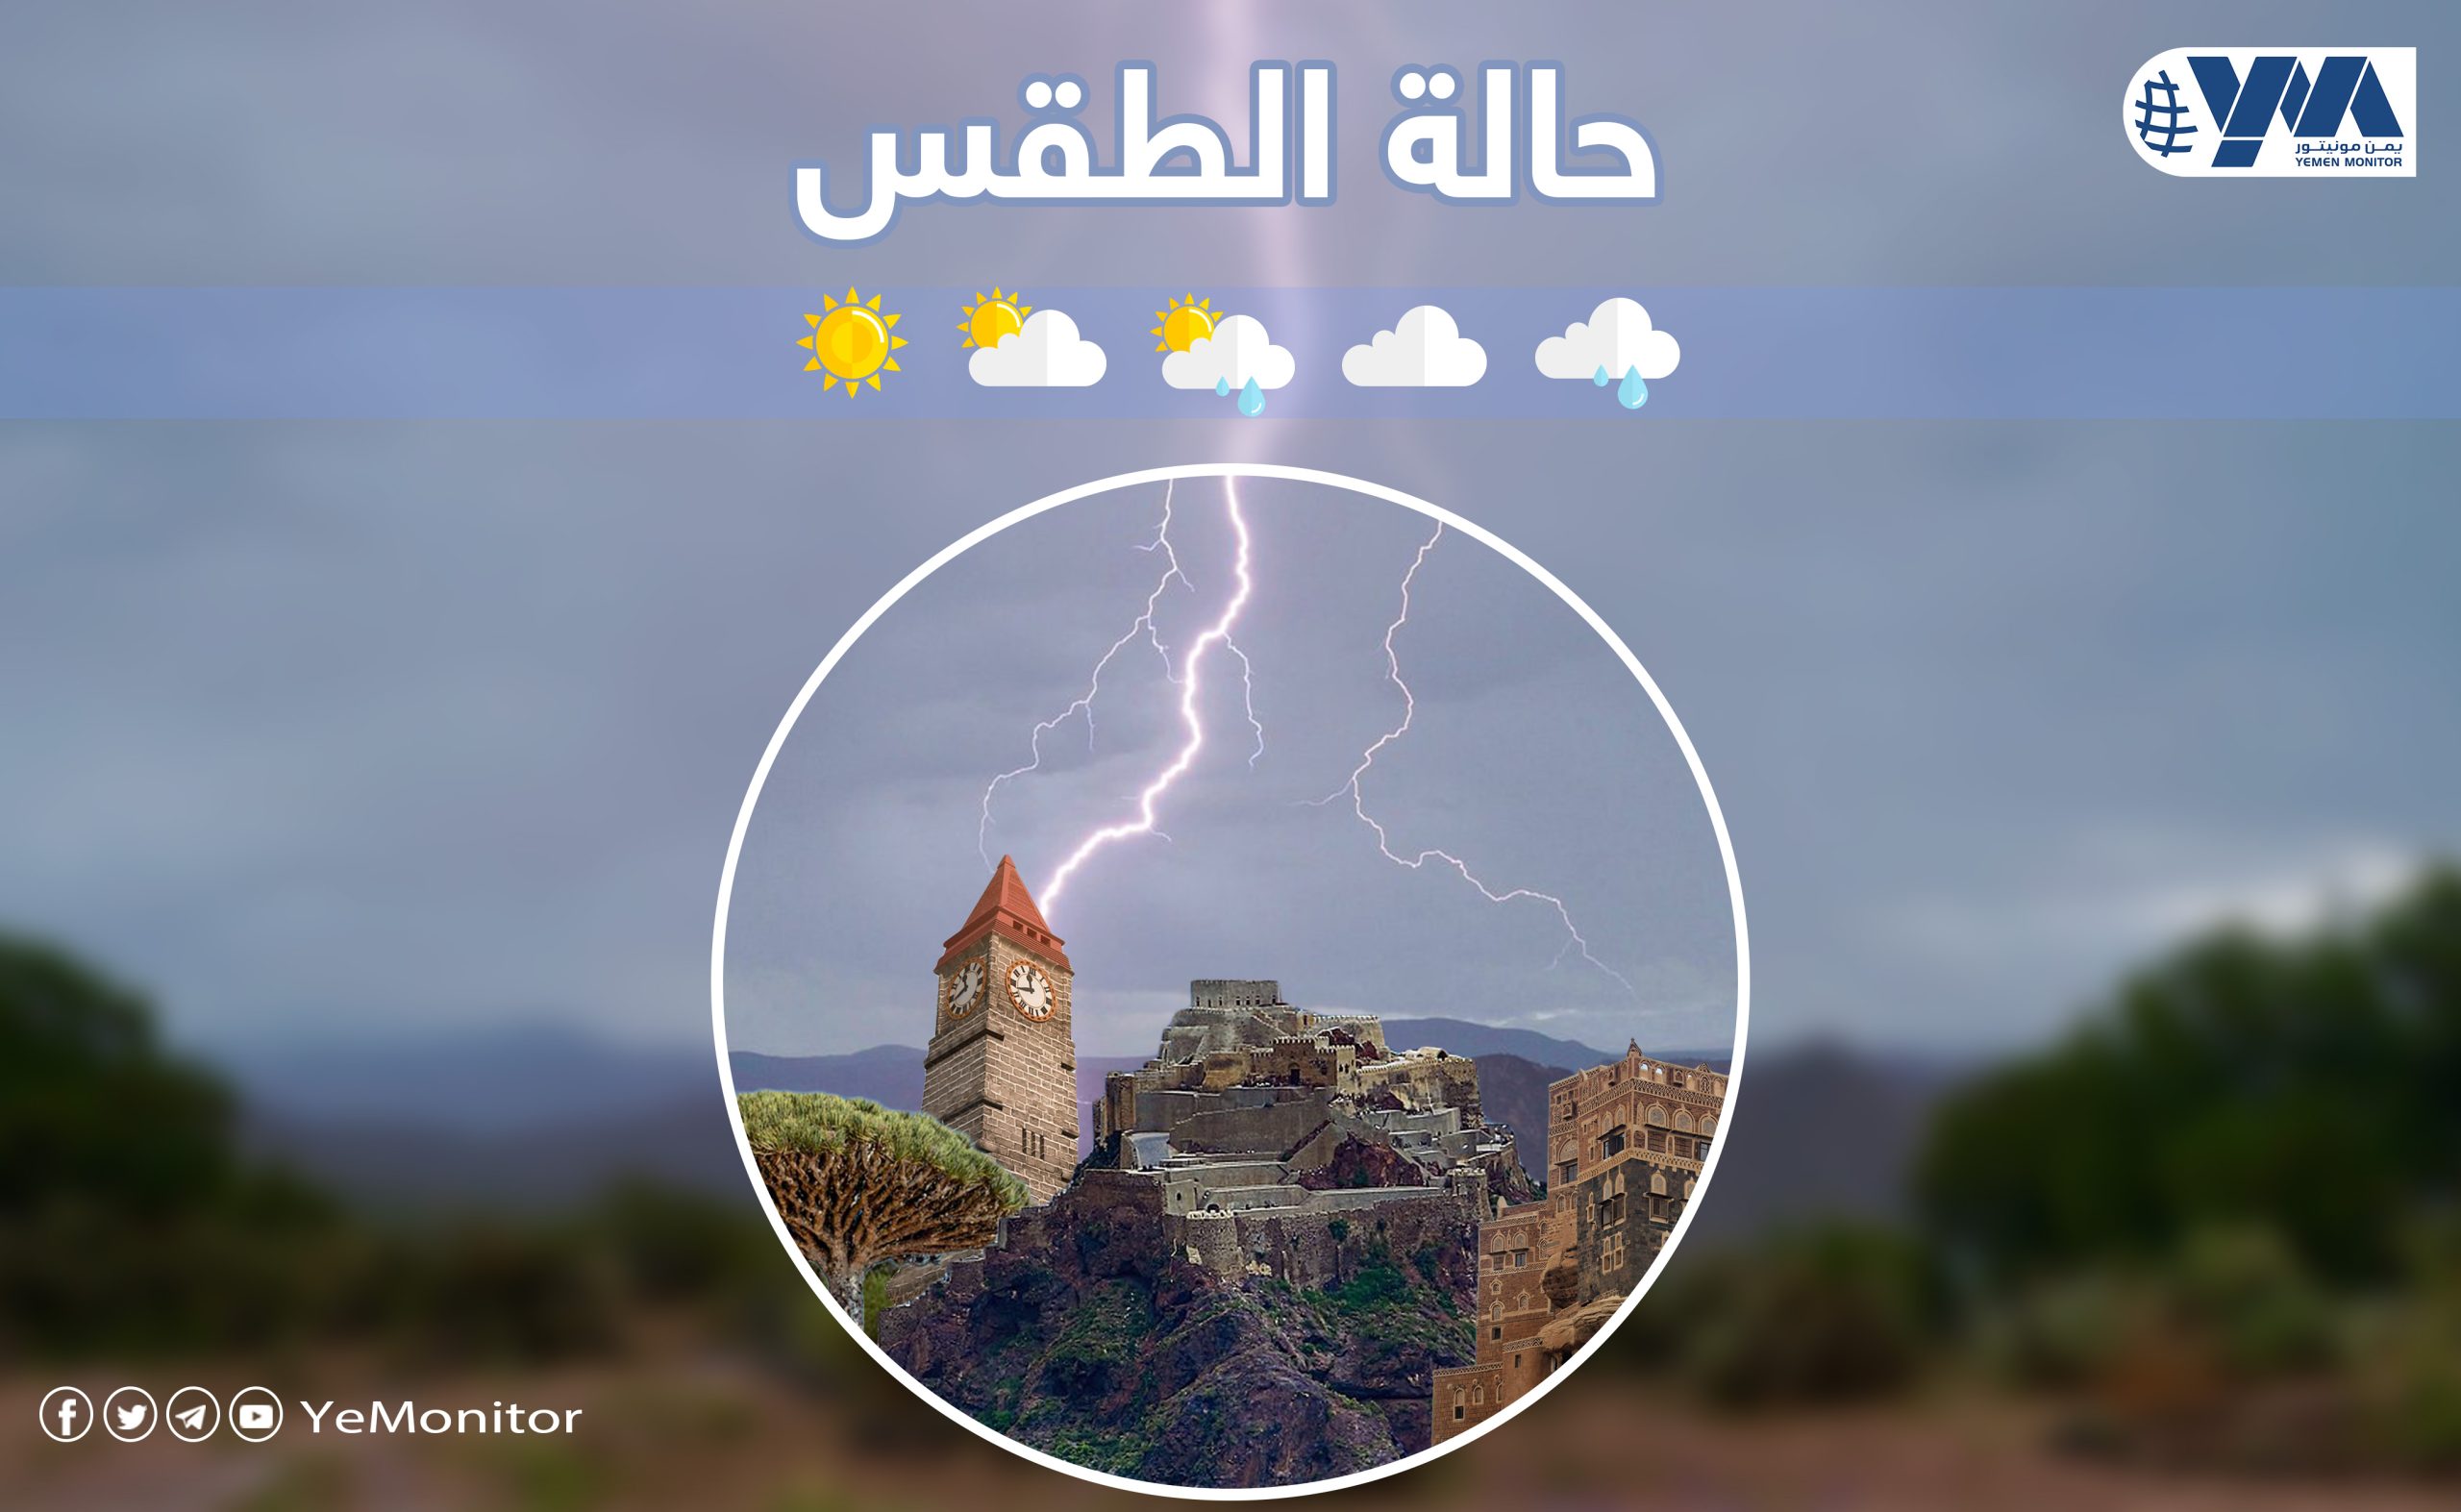 “الأرصاد اليمني”: طقس حار مع توقعات بسقوط أمطار رعدية على بعض المناطق